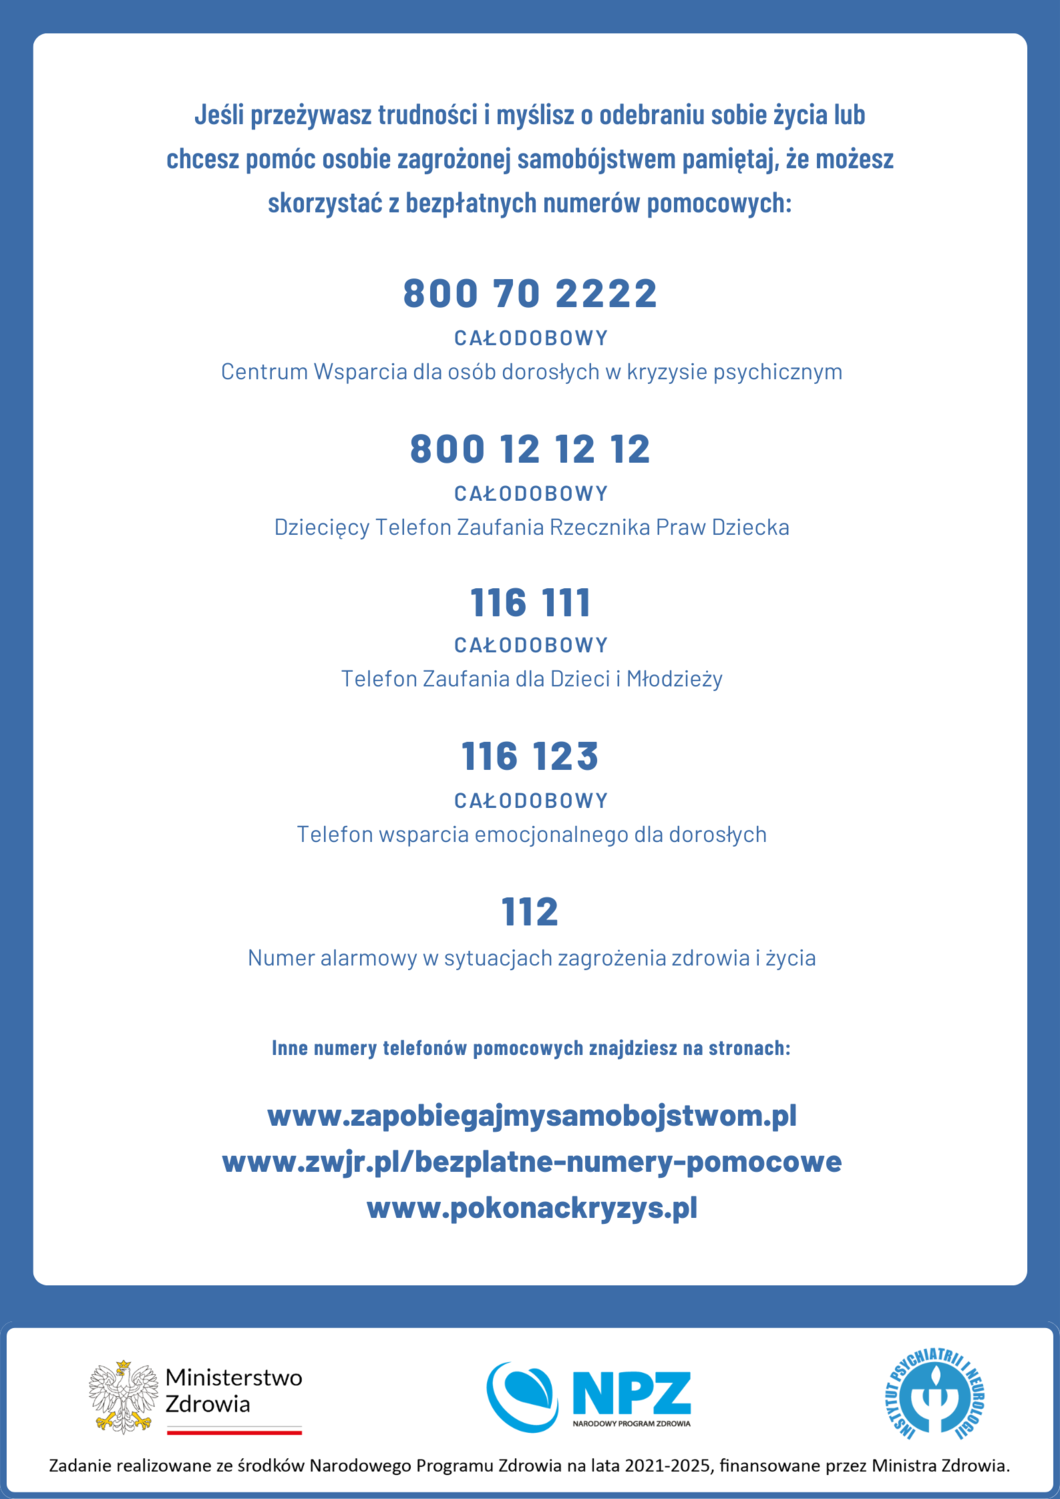 plakat z nazwami instytucji pomocowych i numerami telefonów